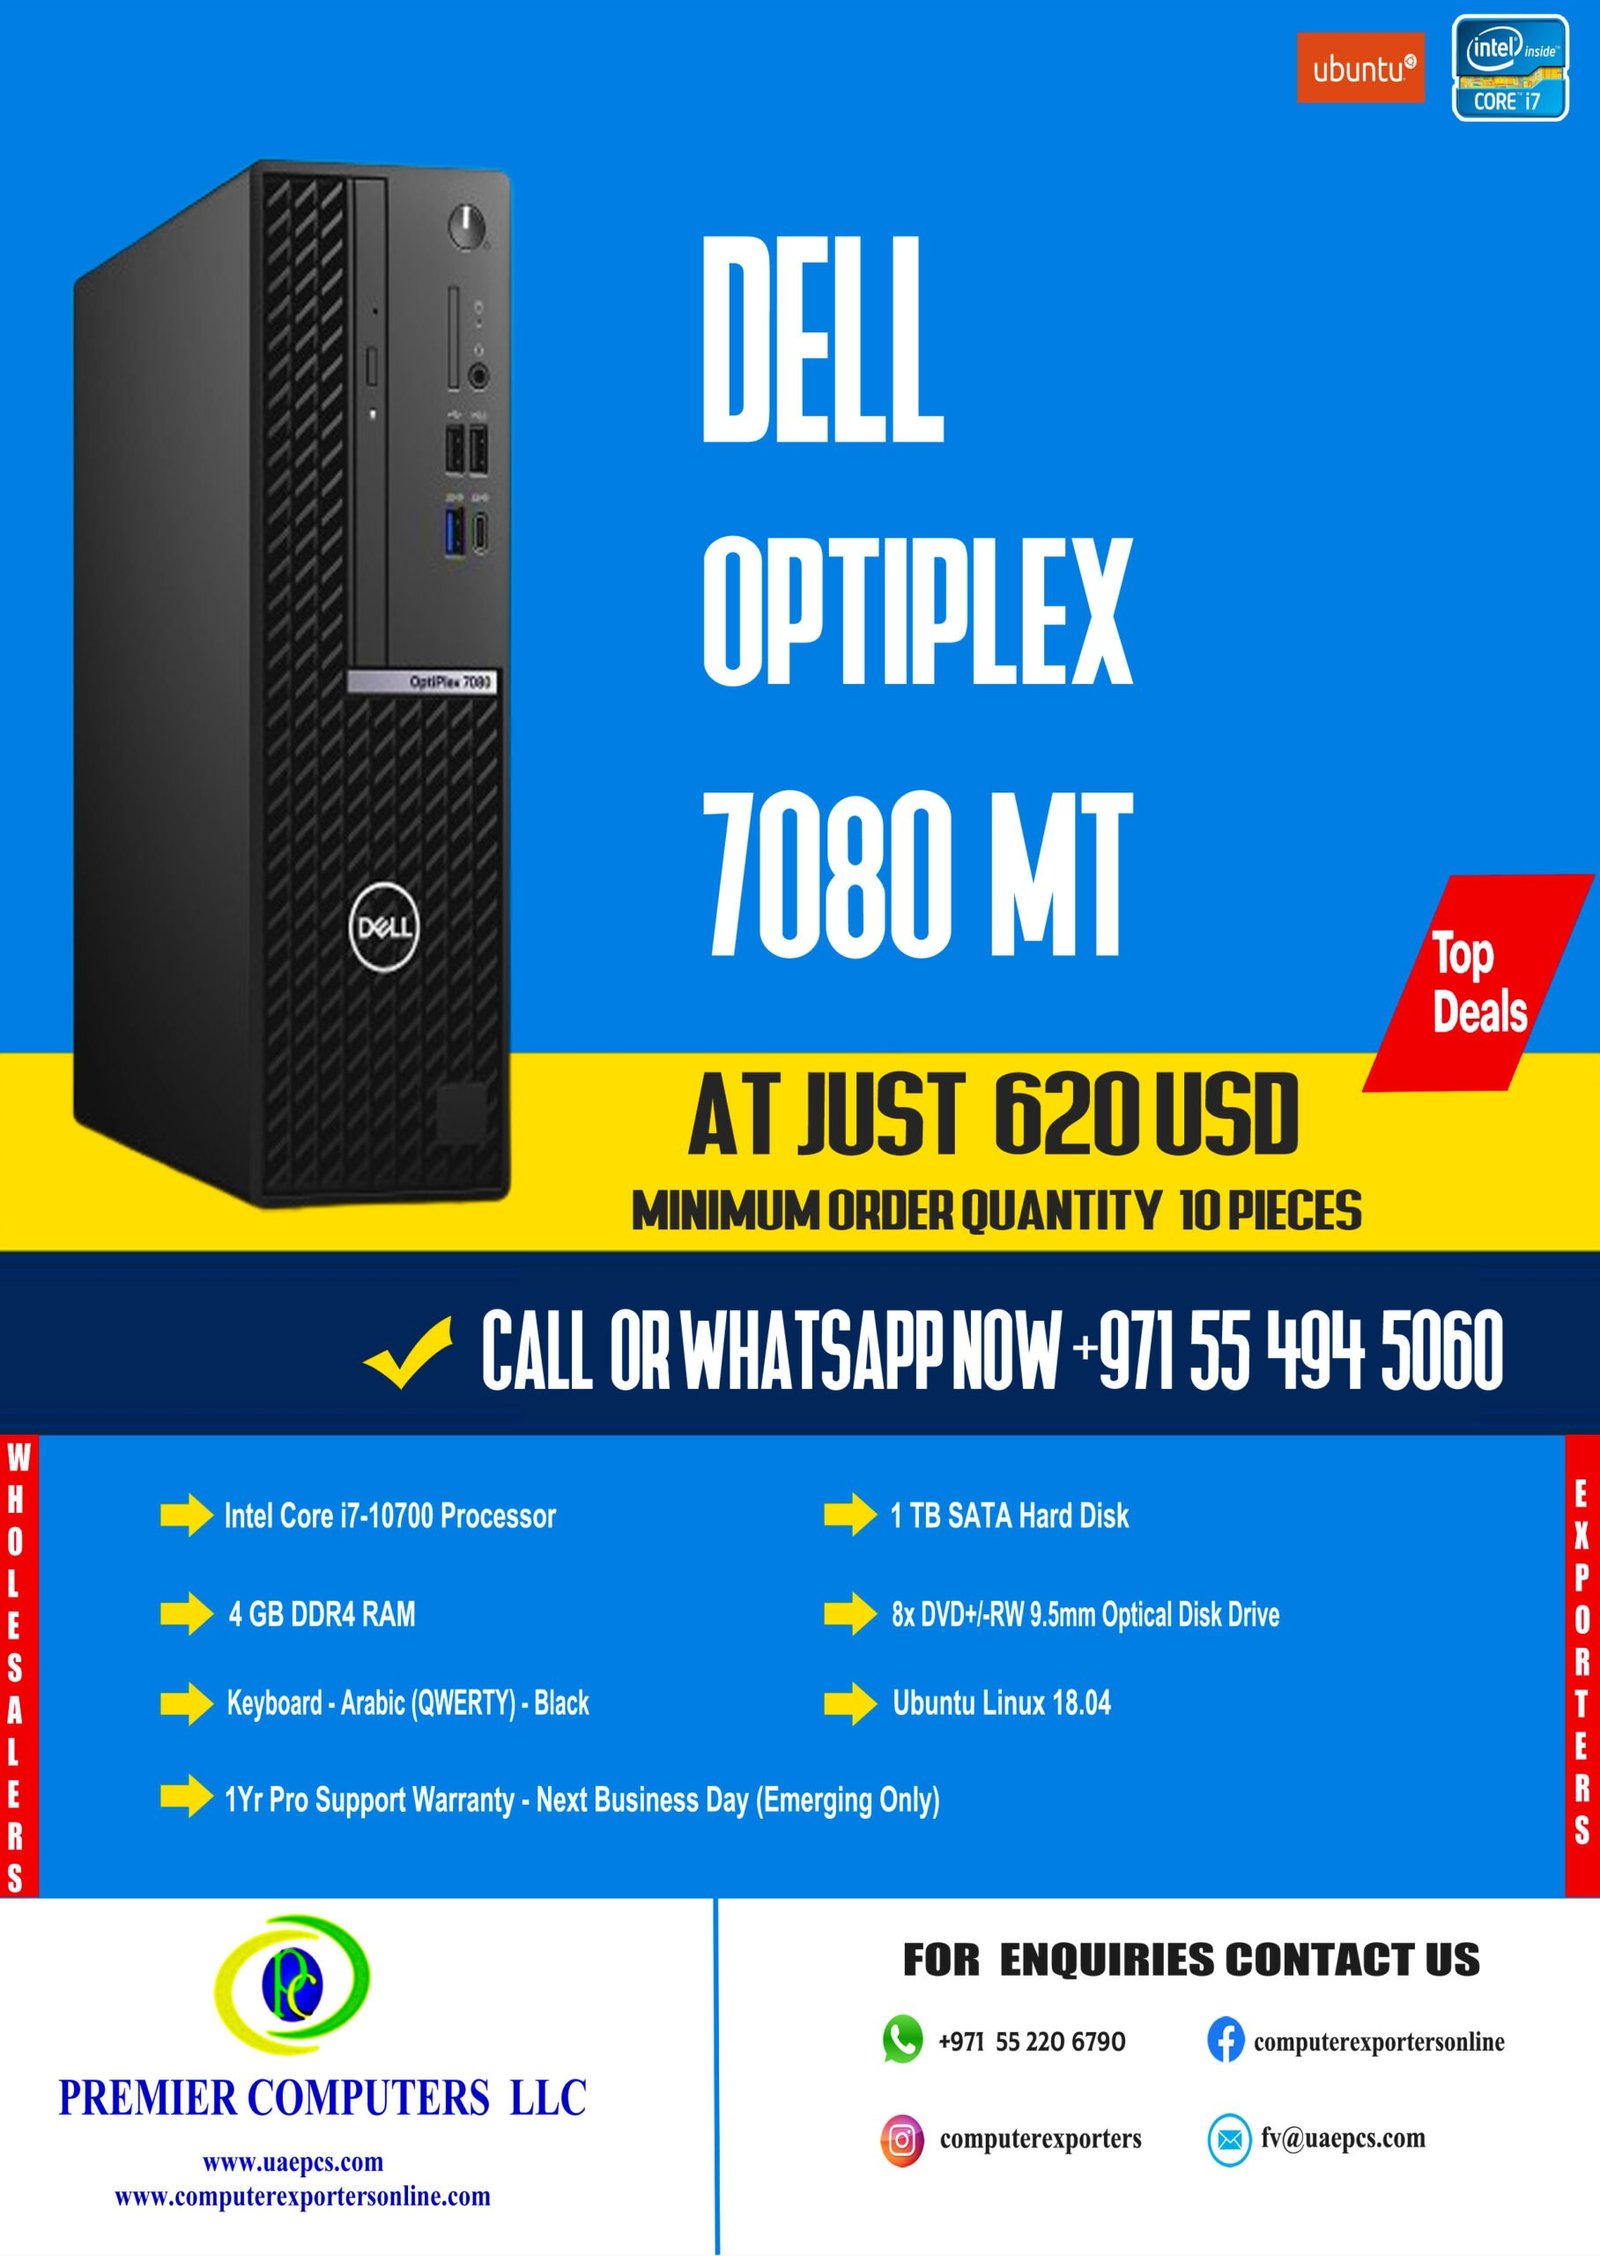 Dell Optiplex 7080 MT